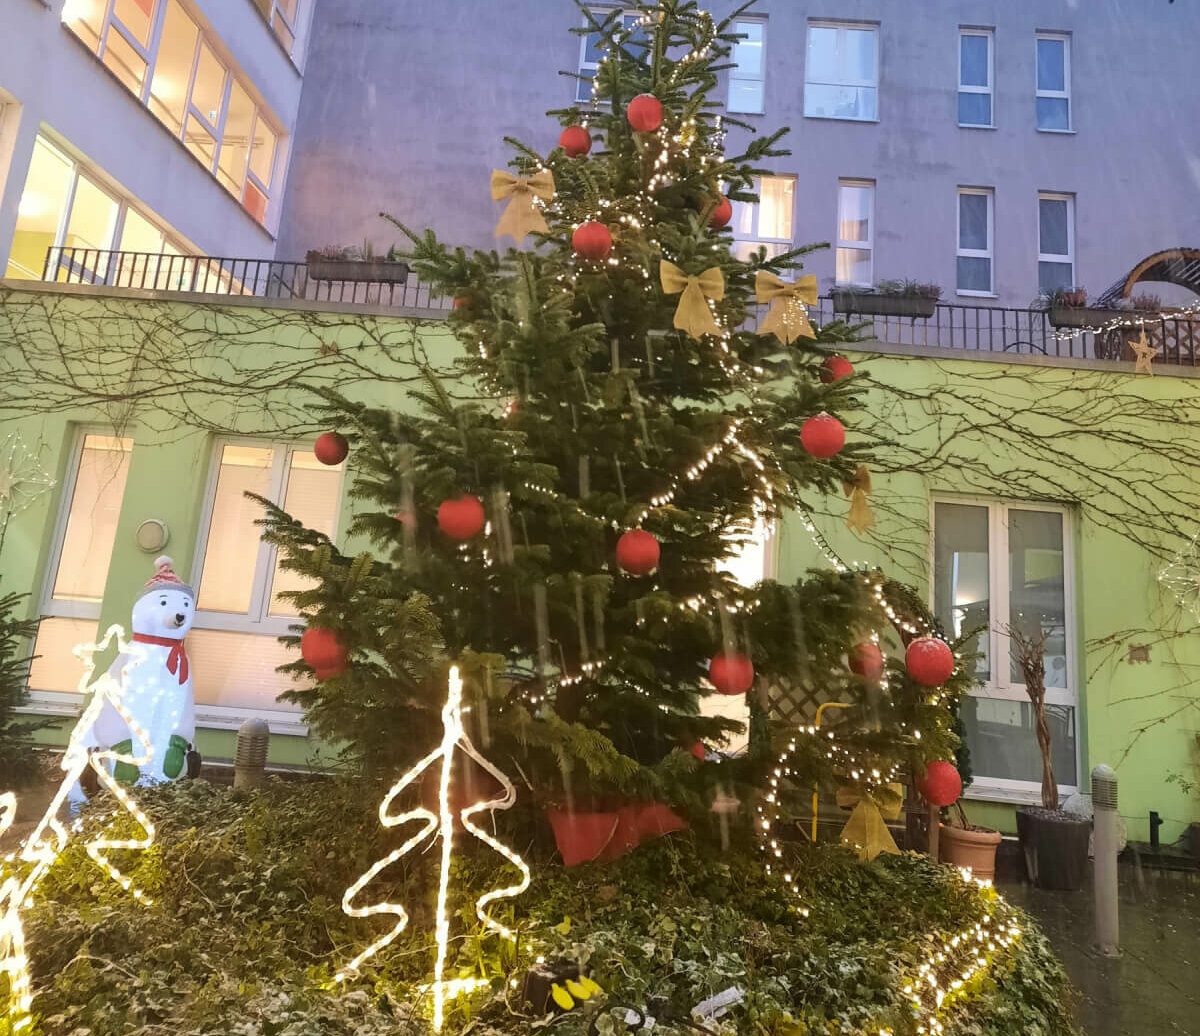 Weihnachtsbaum im Innenhof der Residenz Aaseehof in Münster